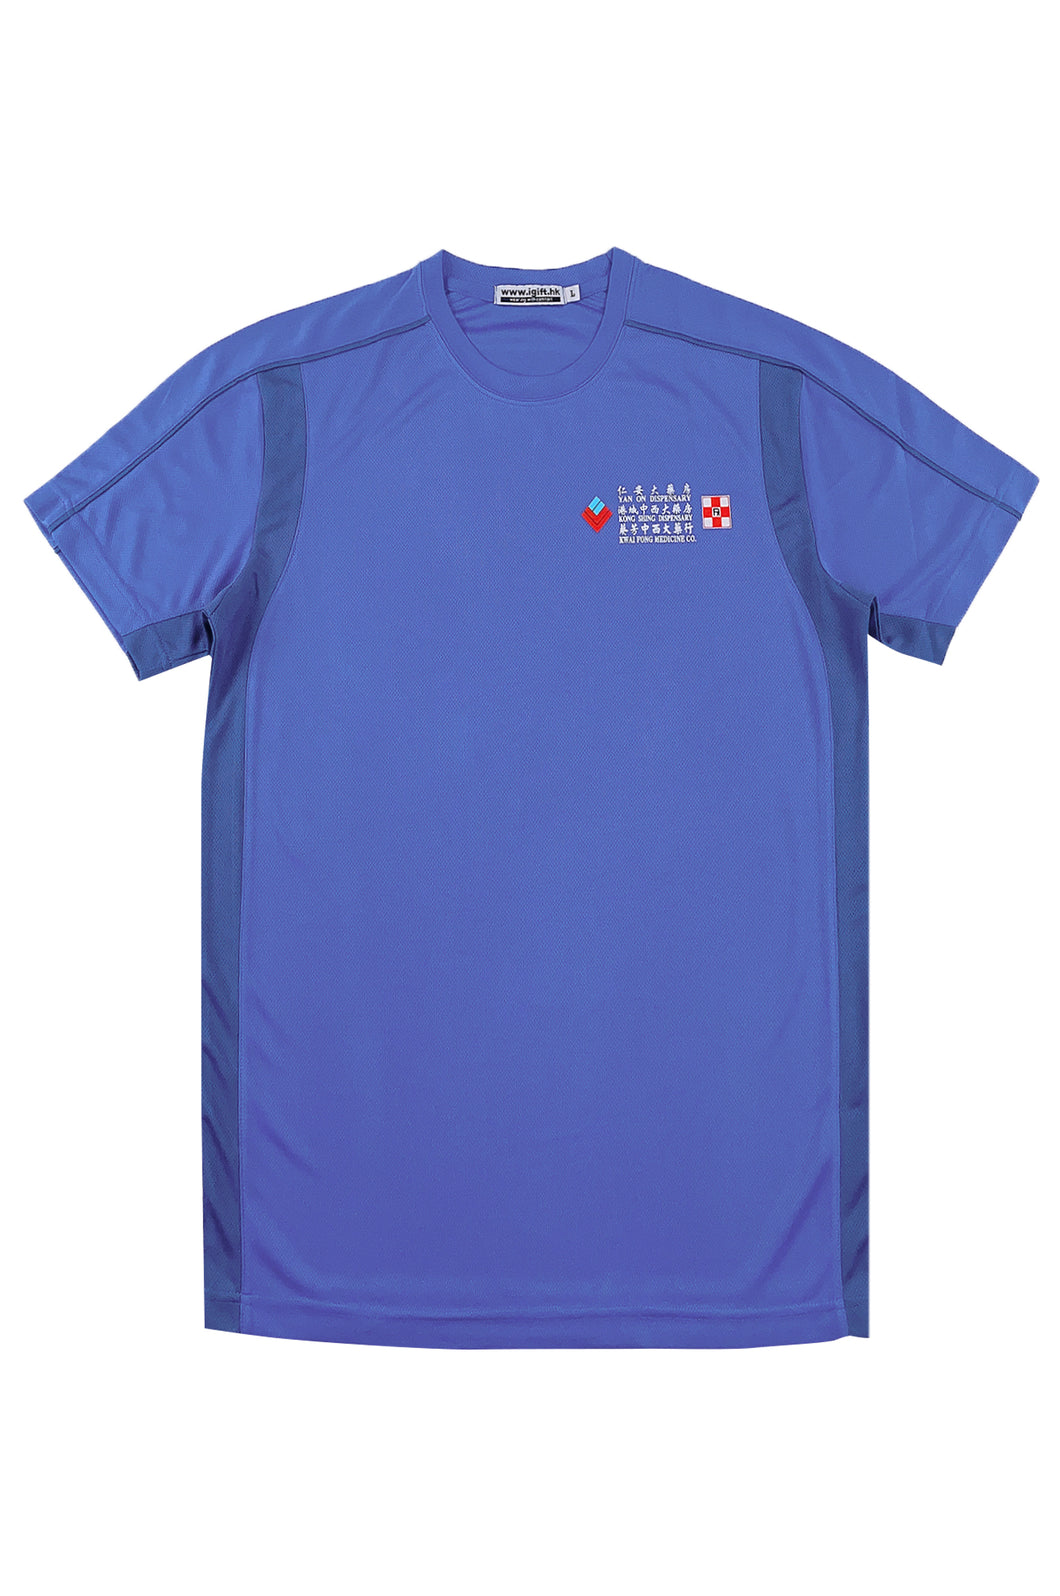 網上下單訂製短袖藍色圓領T恤   牛角袖  T1125